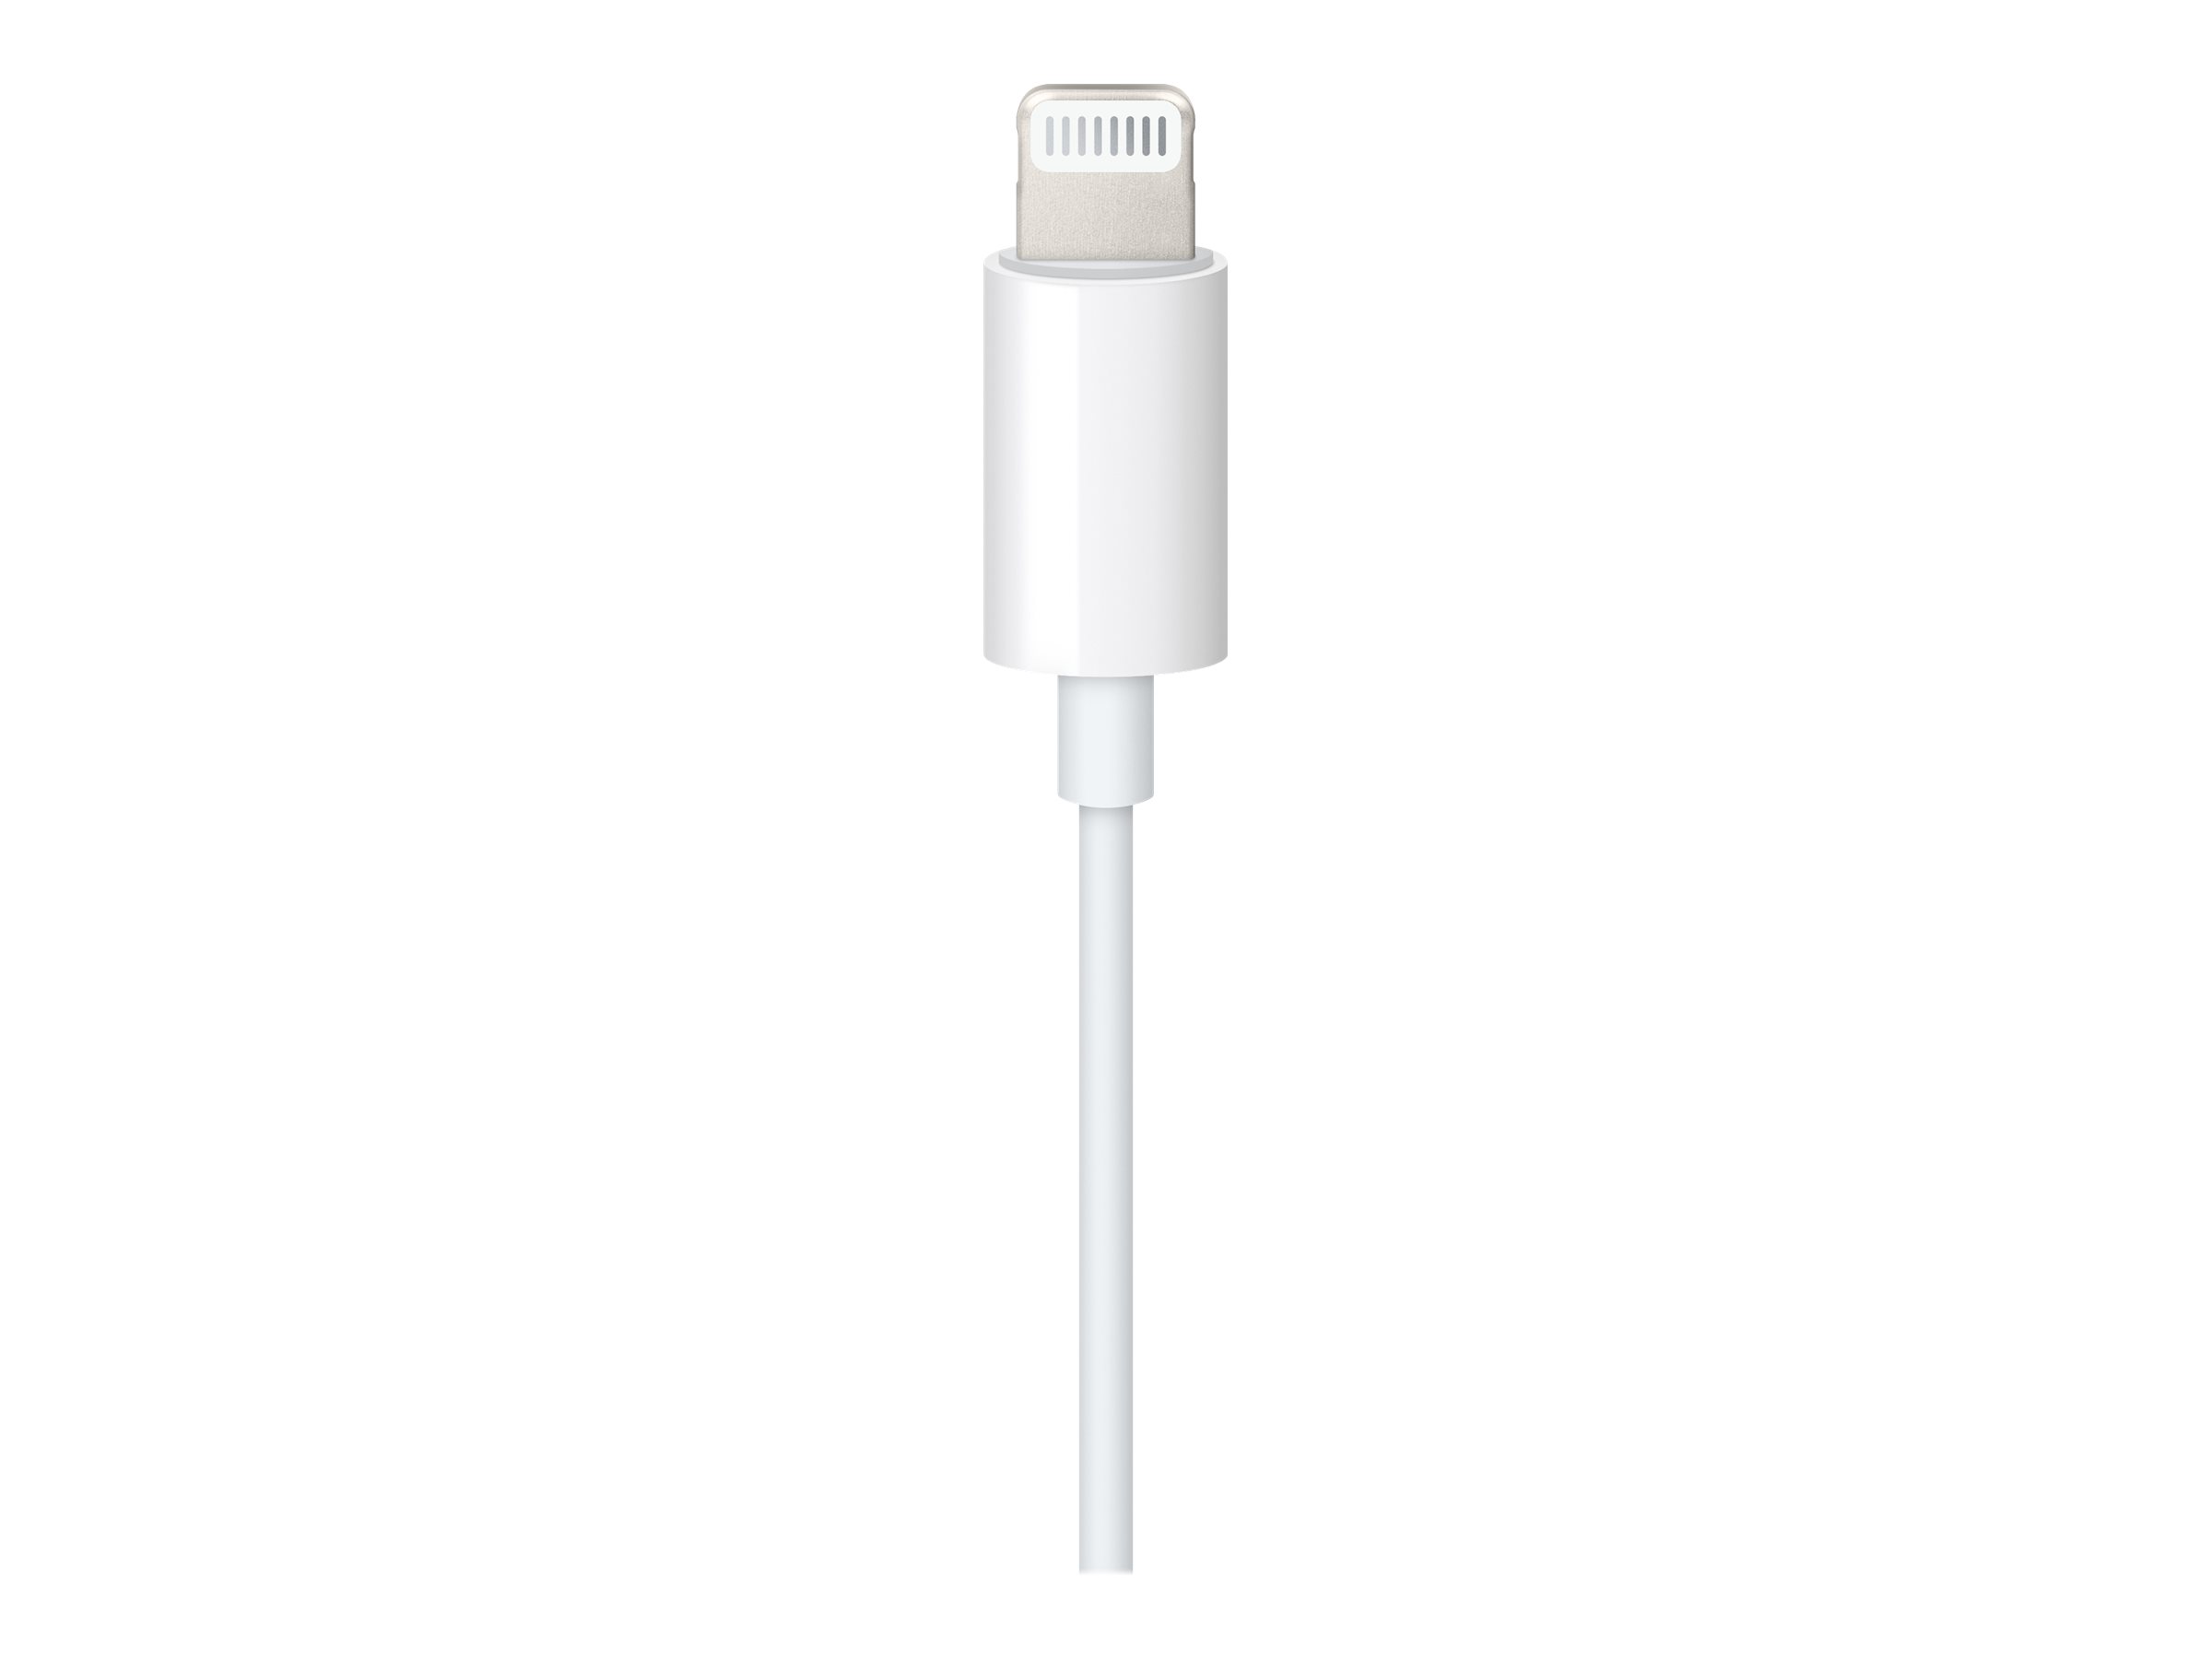 Apple Lightning to 3.5mm Audio Cable - Câble audio - Lightning mâle pour mini jack 4 pôles mâle - 1.2 m - blanc - MXK22ZM/A - Accessoires pour systèmes audio domestiques